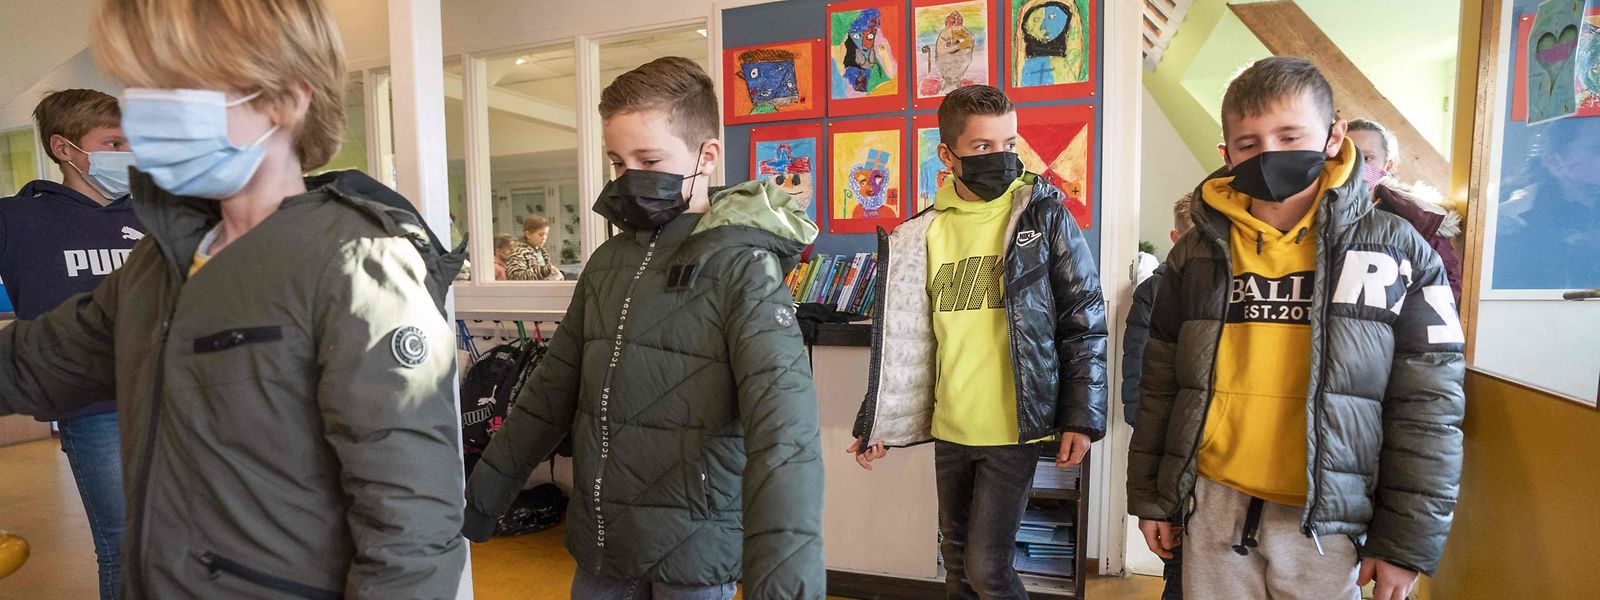 Vendredi, le renforcement du protocole sanitaire dans les écoles a déjà été annoncé par le gouvernement luxembourgeois.